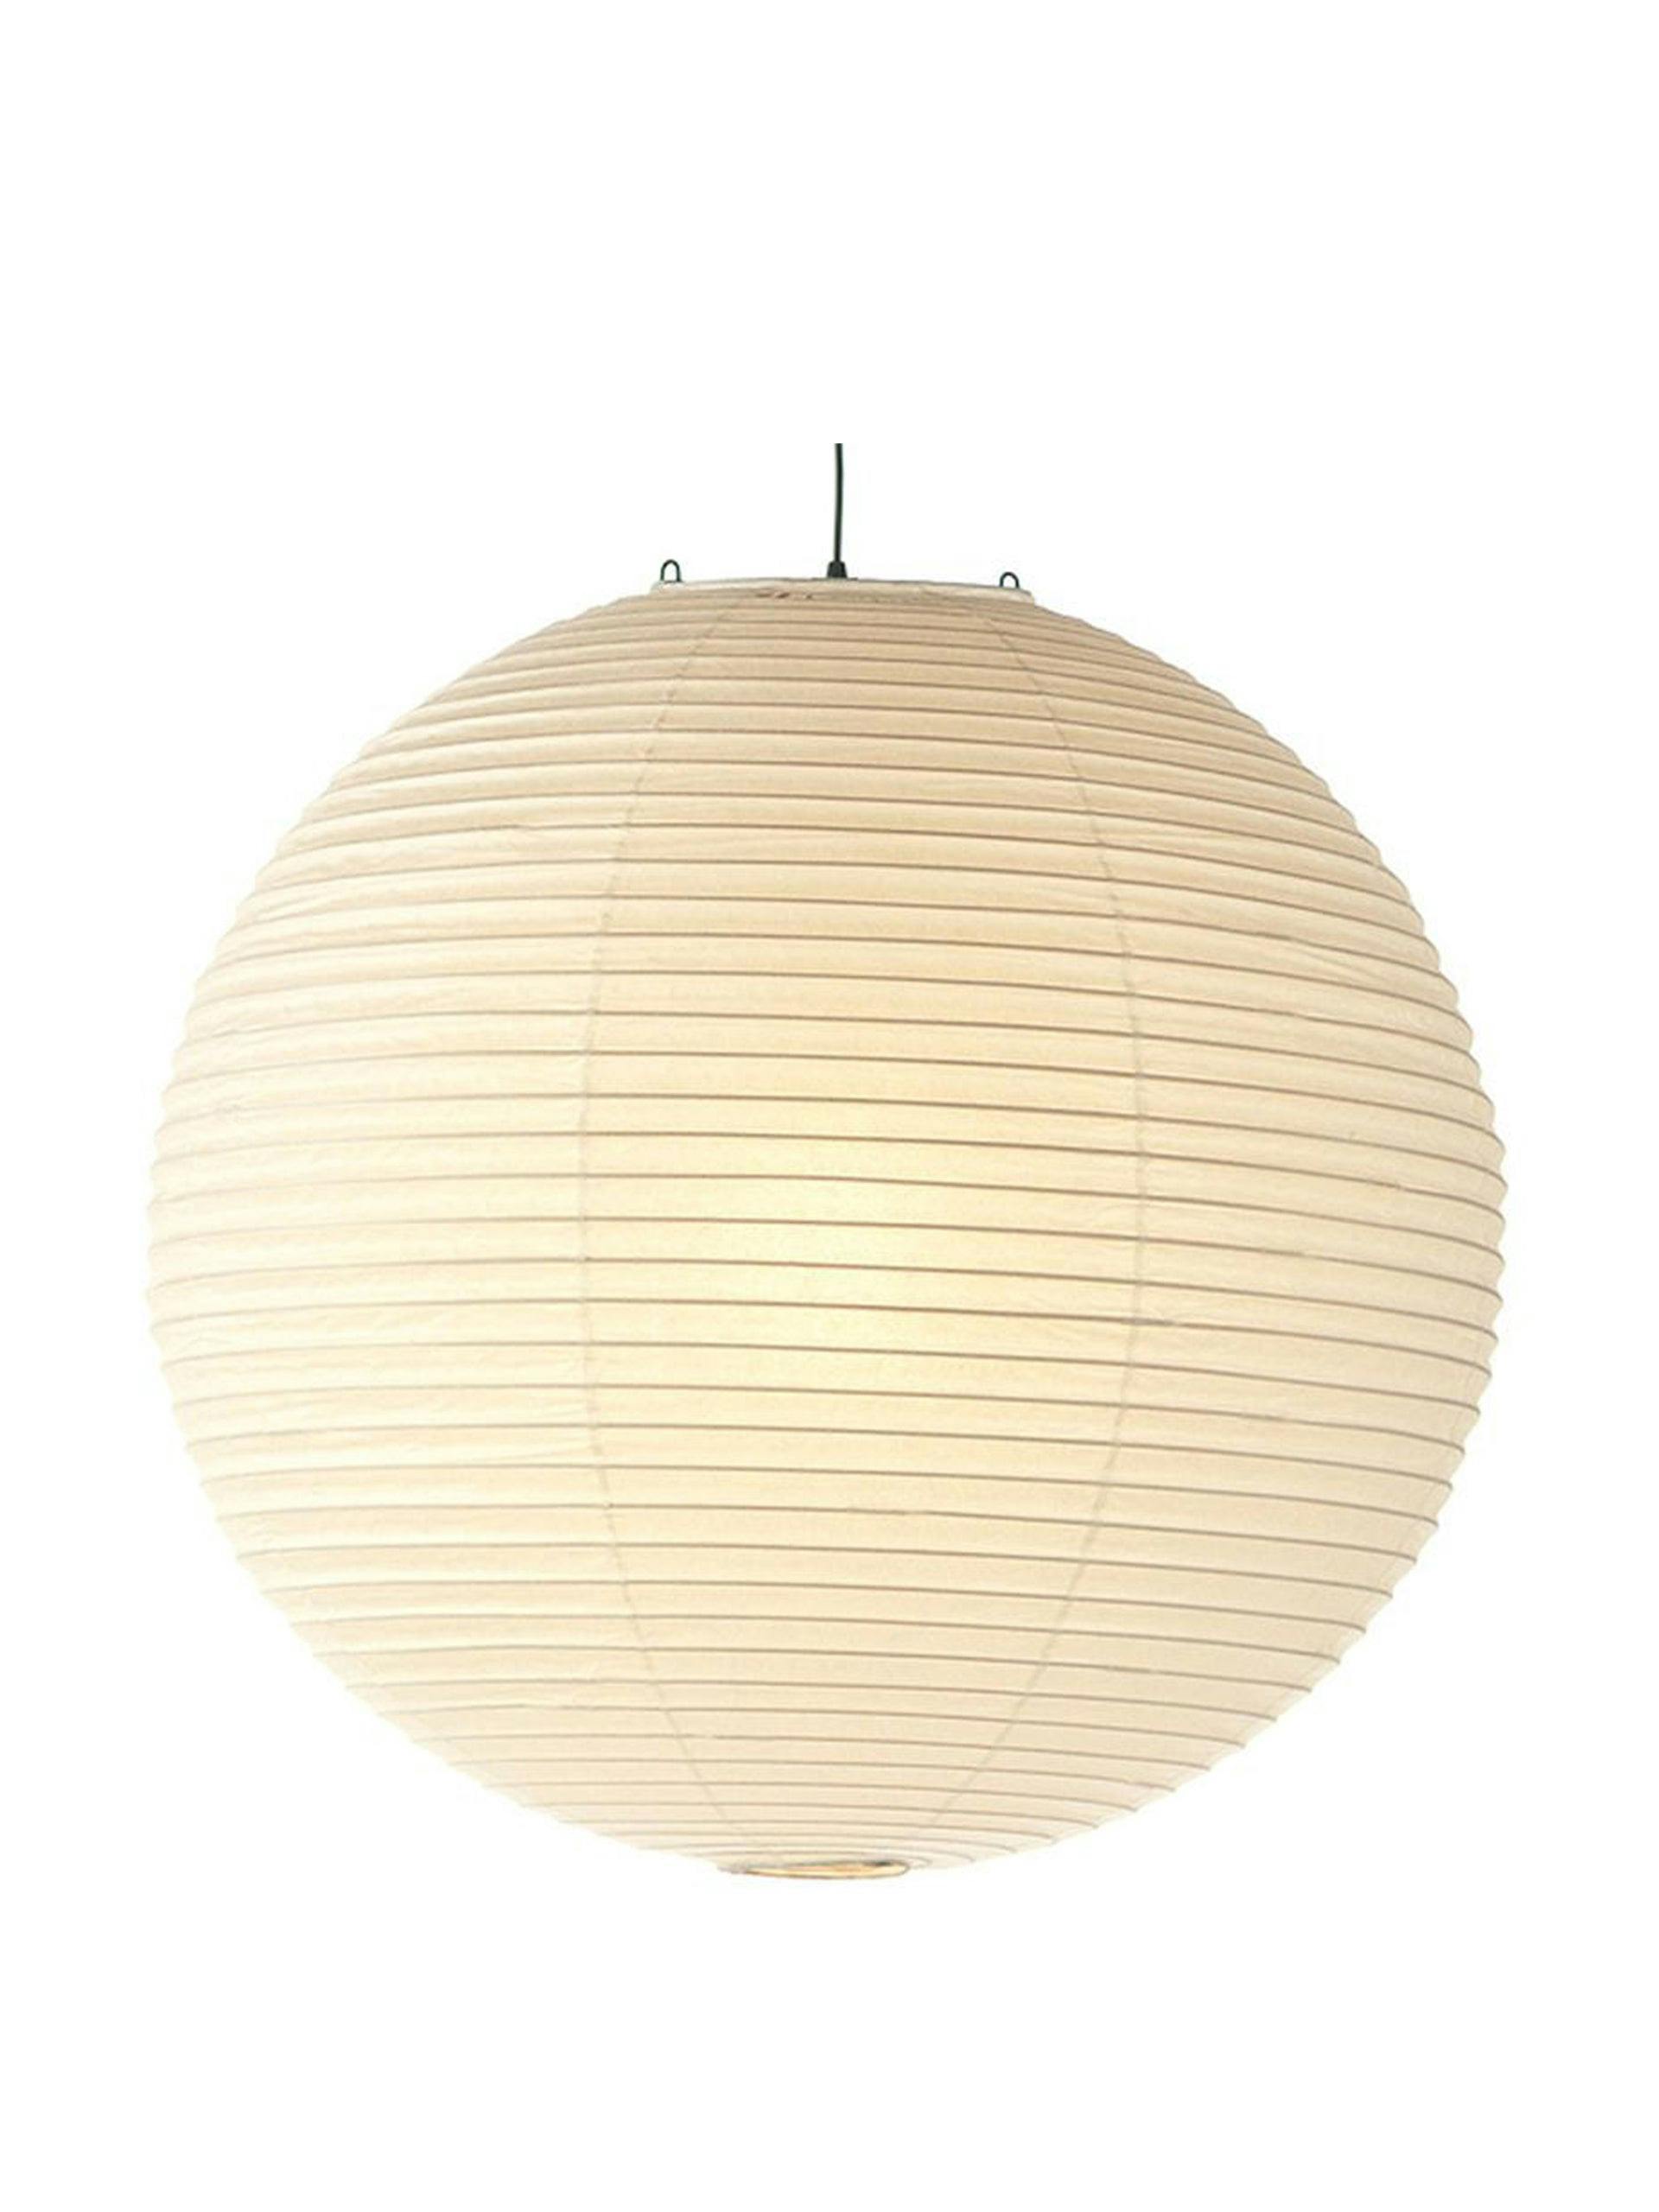 Paper sphere pendant light